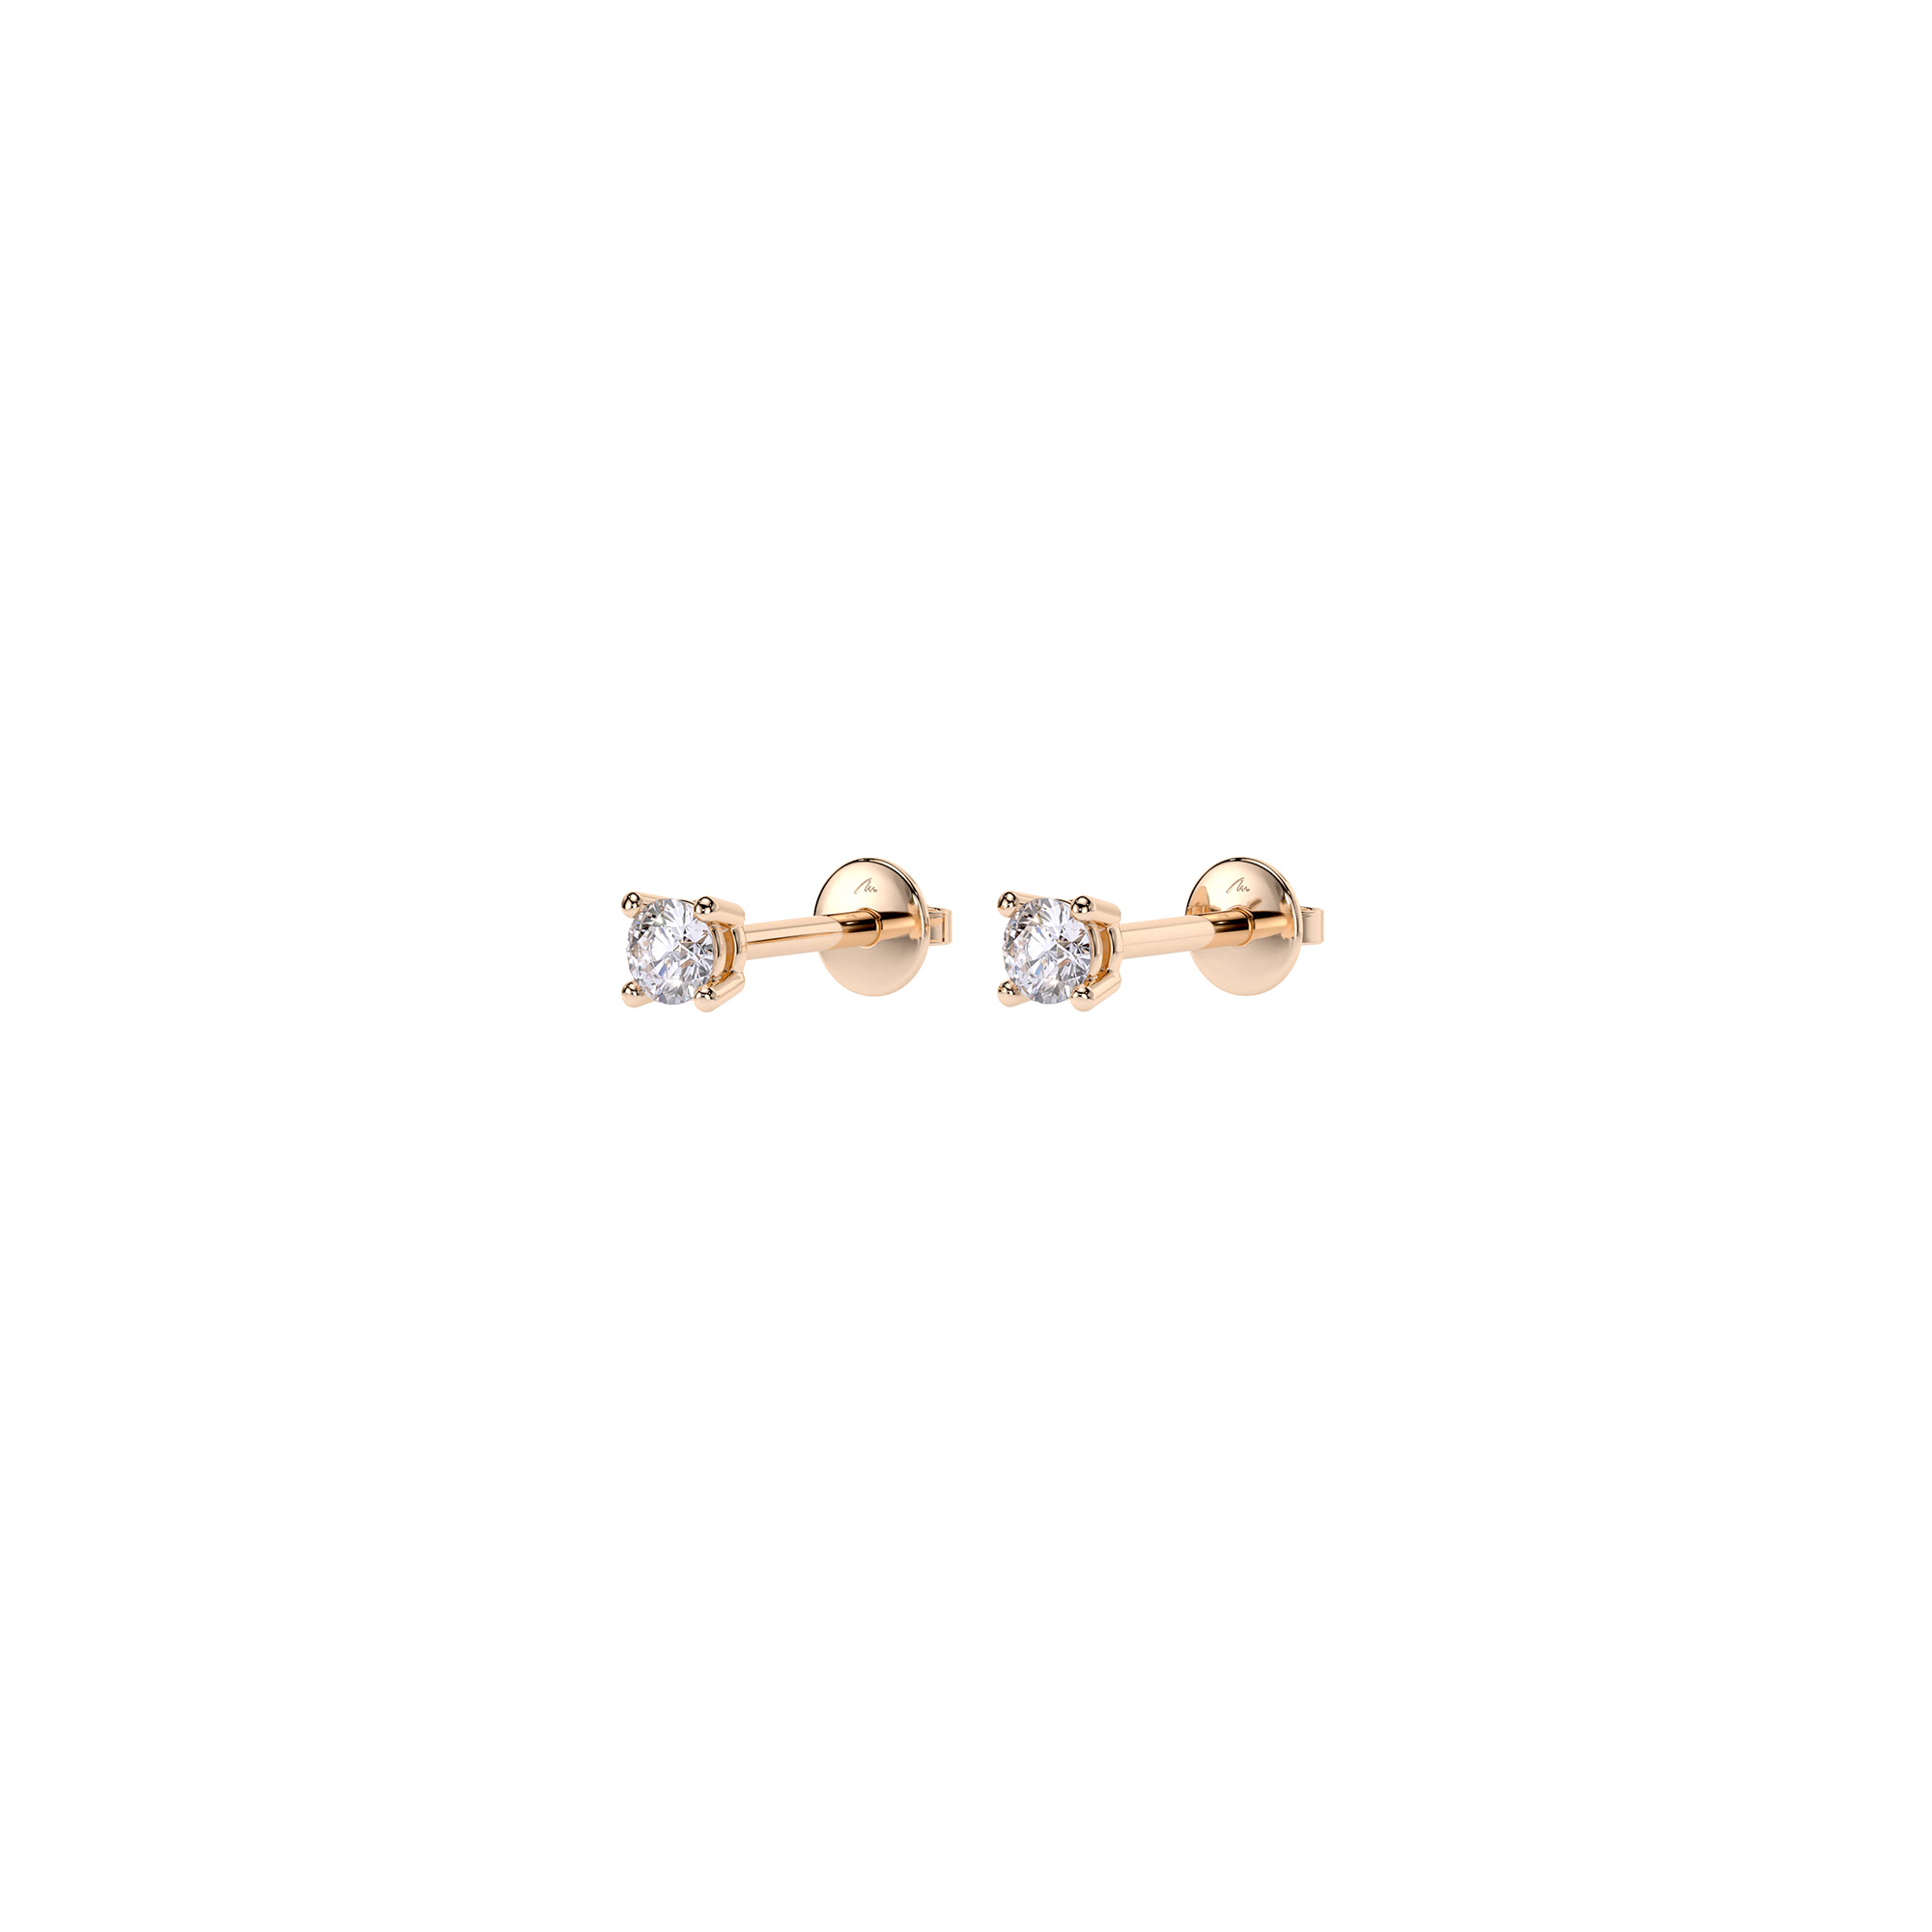 14 k rose gold white diamonds 0.20 ct Studs earrings